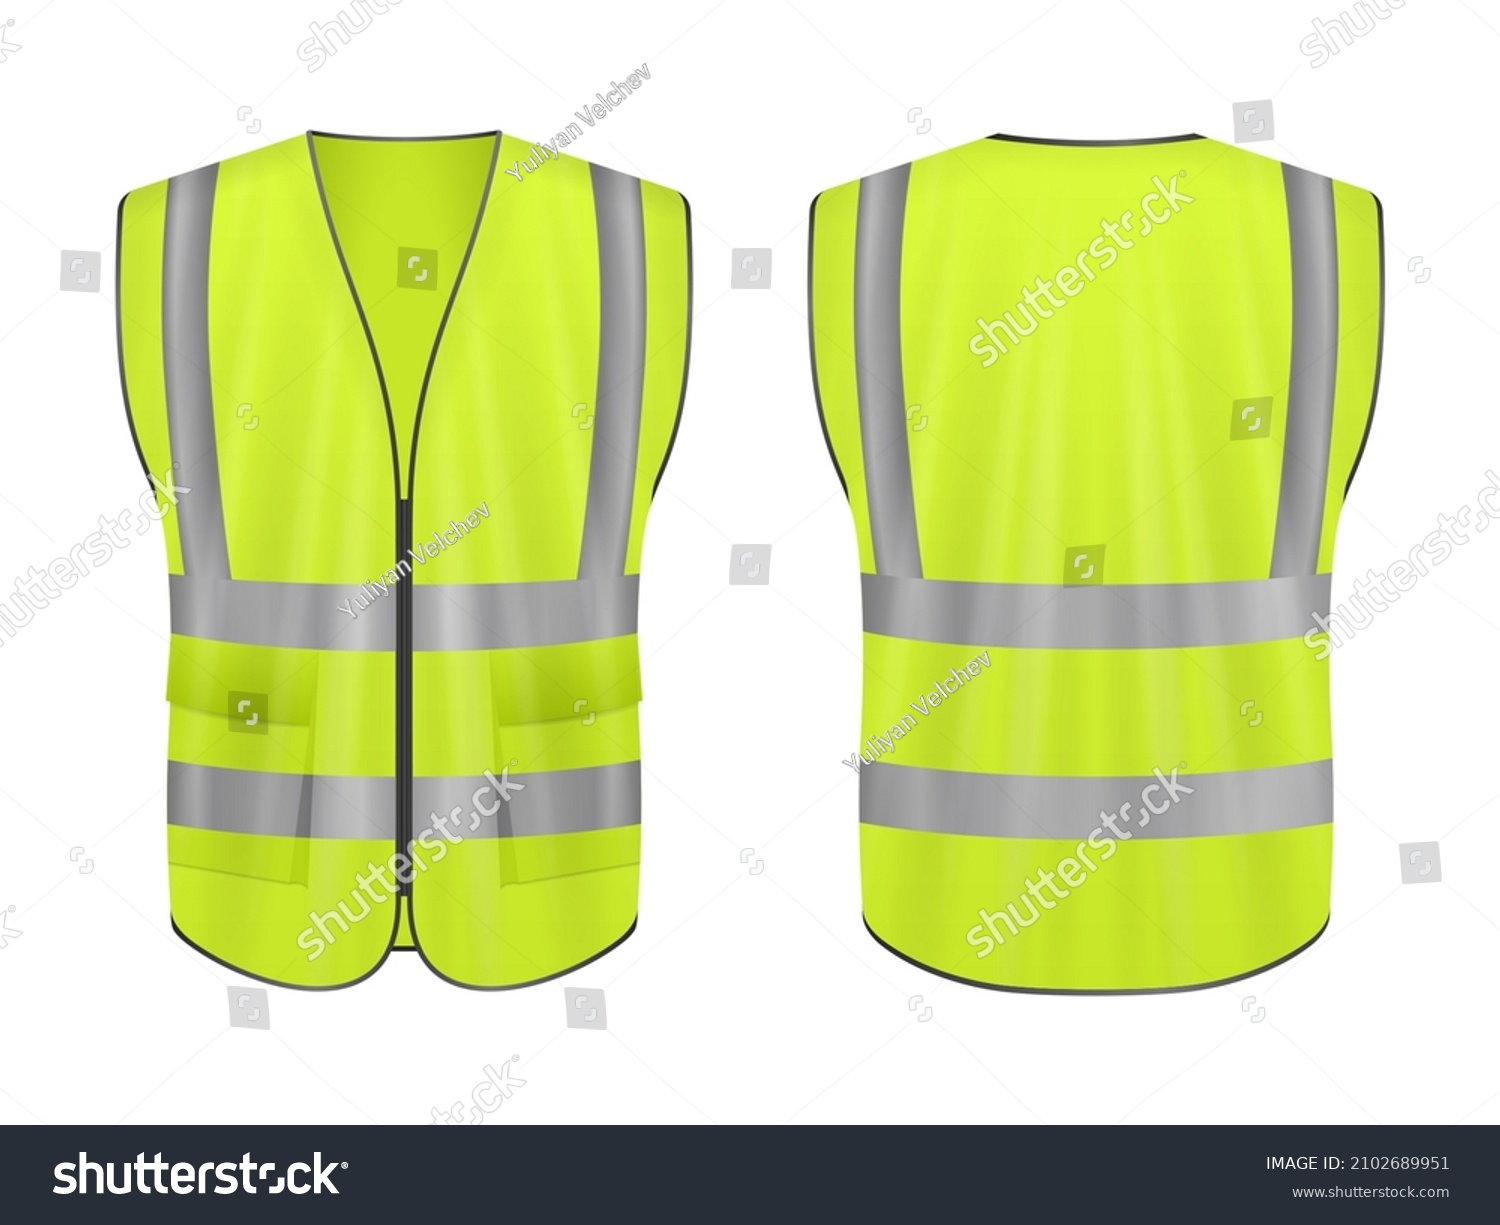 SVG of Safety vest set on a white background. Vector illustration. svg